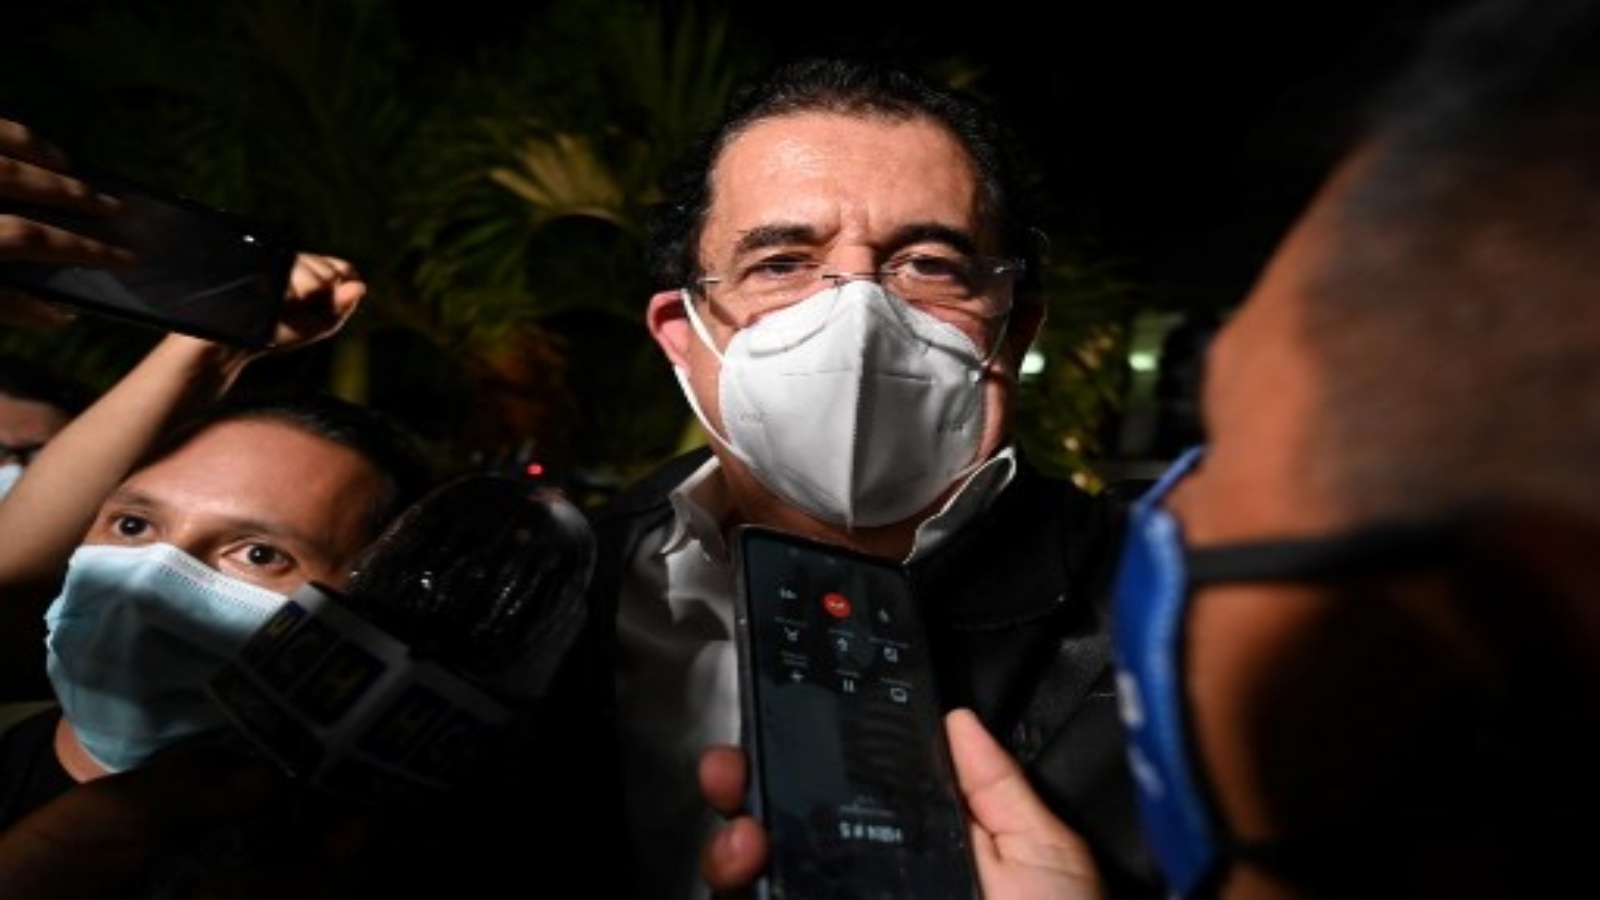 الرئيس الهندوراسي السابق مانويل زيلايا يغادر مطار تونكونتين الدولي بعد احتجازه لأكثر من ست ساعات لحيازته 18000 دولار نقدًا لم يصرح بها للسلطات في تيغوسيغالبا في 27 نوفمبر 2020.